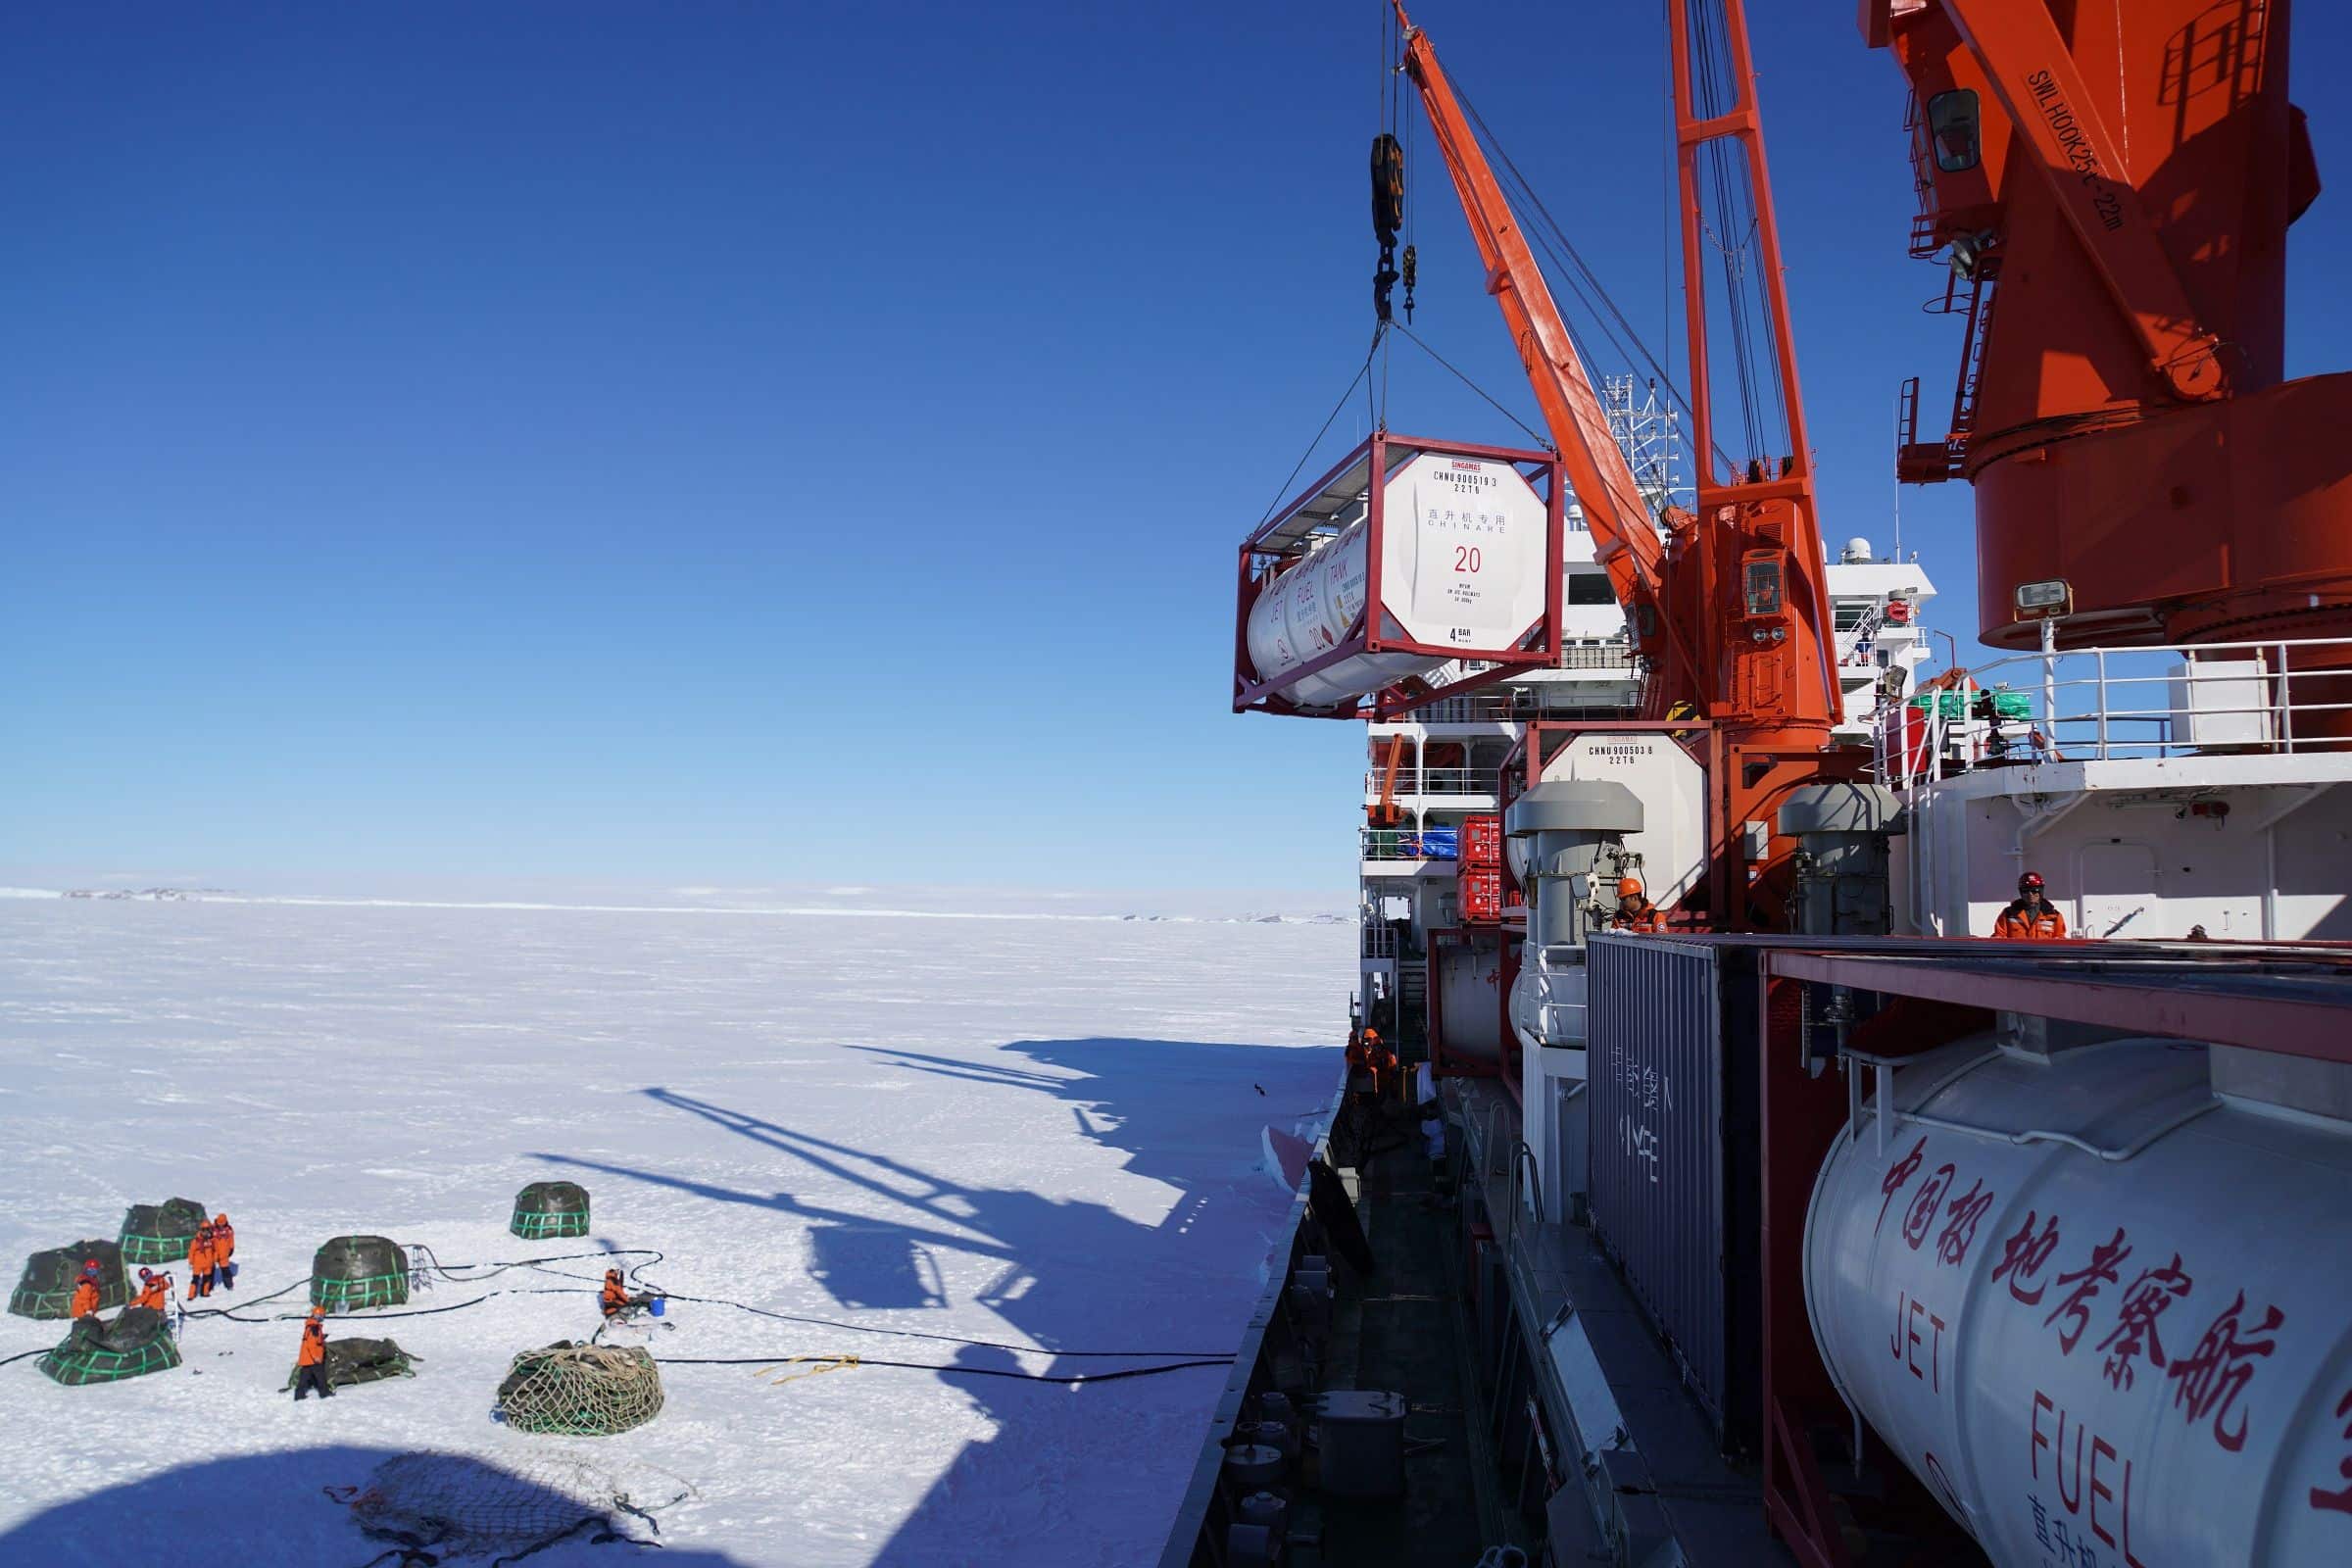 Les membres de l'expédition antarctique chinoise déchargent les cargaisons du brise-glace chinois Xuelong dans la rade au large de la station chinoise Zhongshan en Antarctique, le 23 novembre 2019
Crédit:CHINE NOUVELLE/SIPA/1912021311